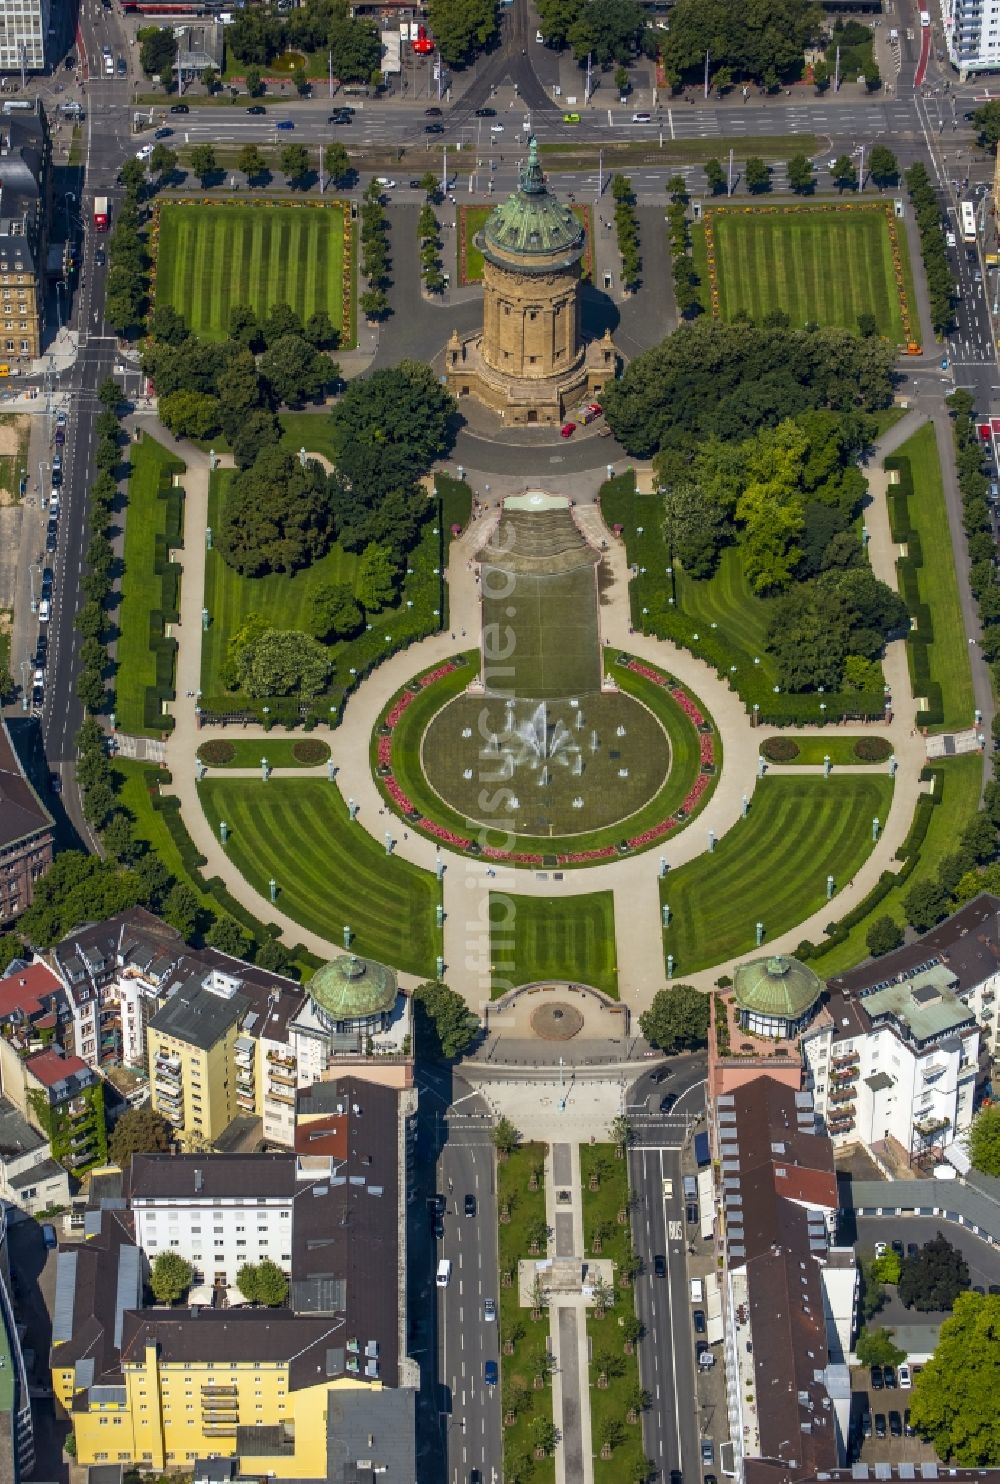 Luftbild Mannheim - Stadtpark am Wasserturm am Friedrichsplatz in Mannheim im Bundesland Baden-Württemberg